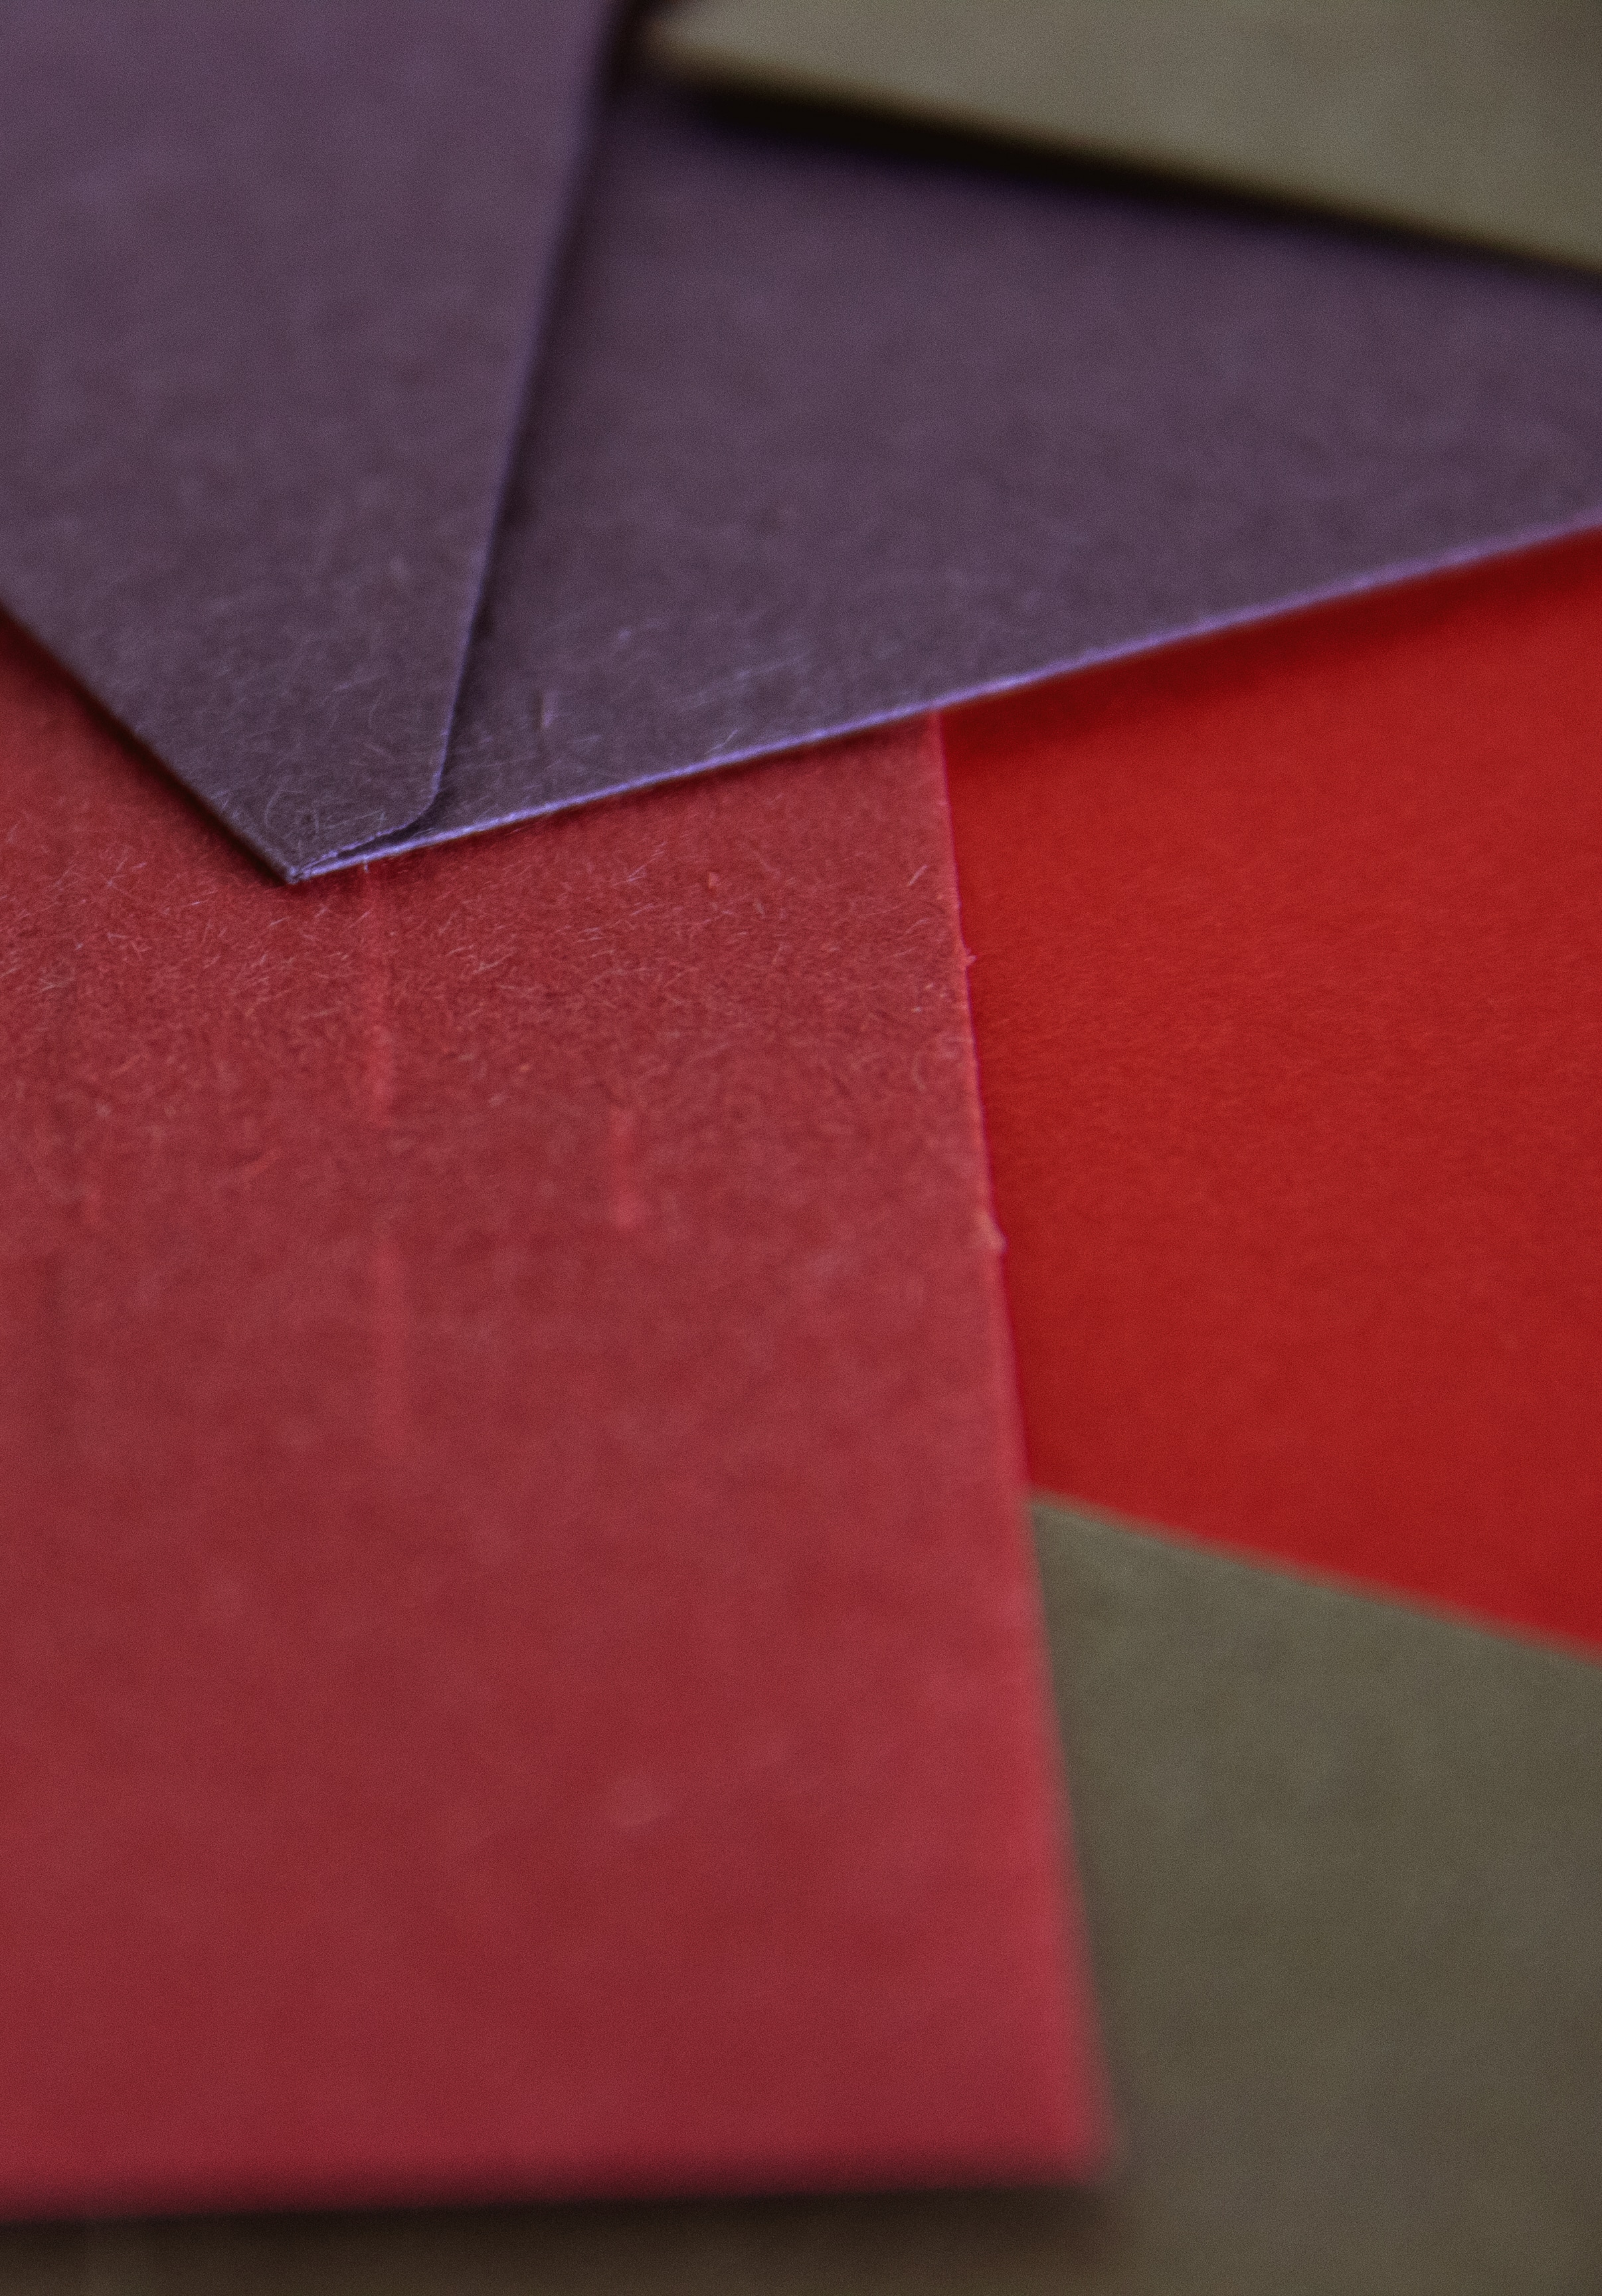 Enveloppe colorée et papier personnalisé pour identité de marque.